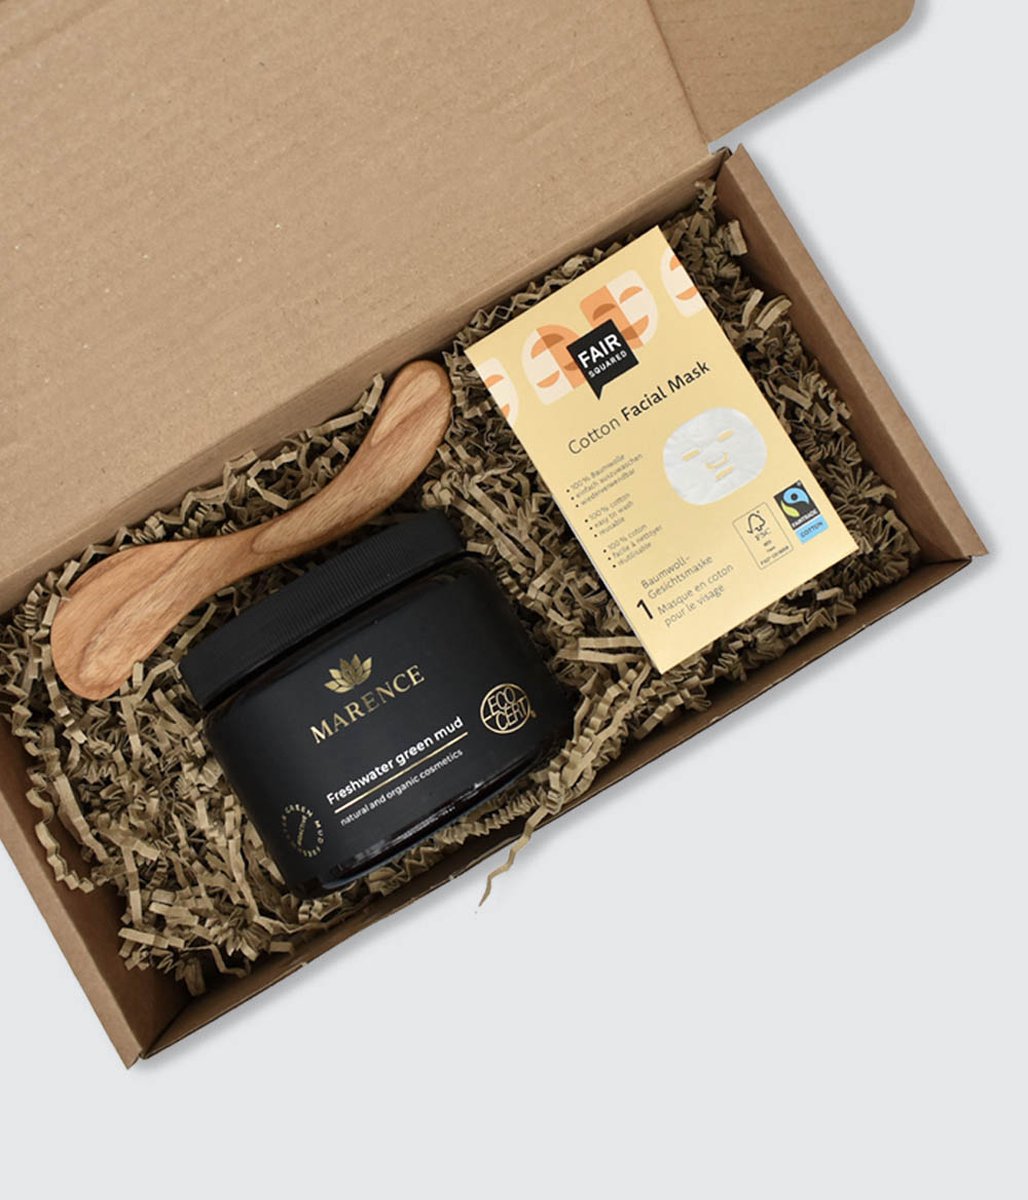 Marence Modderpakking - Gift Box - Verzorgingspakket voor gezondheid en verzorging